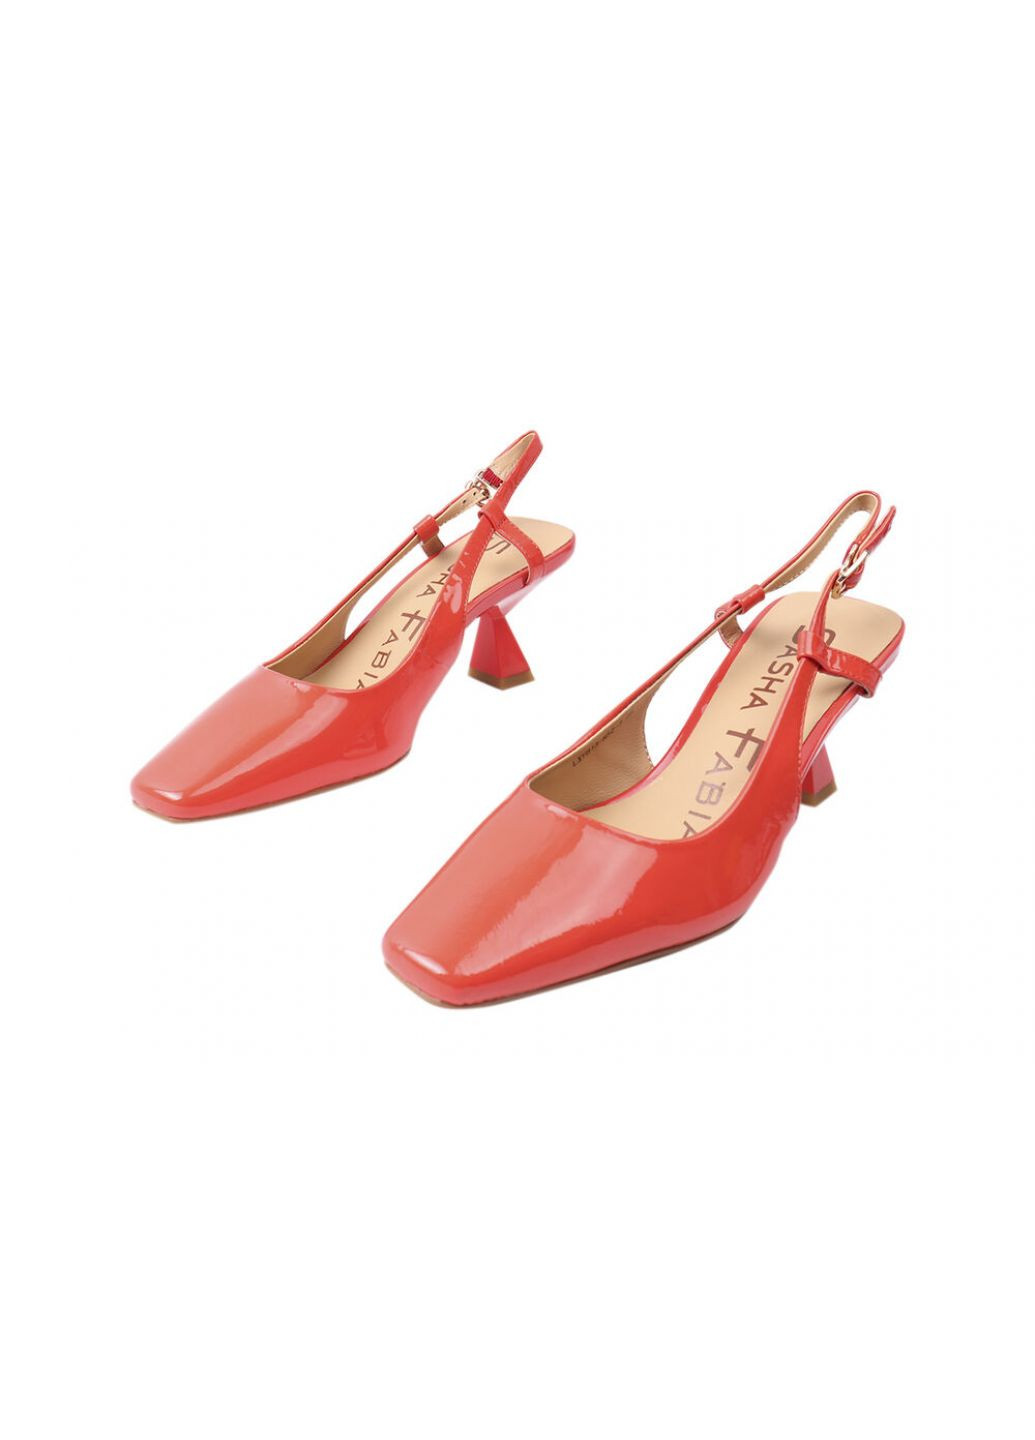 Туфли женские из натуральной лаковой кожи, на низком каблуке, с открытой пятой, цвет красный, Sasha Fabiani